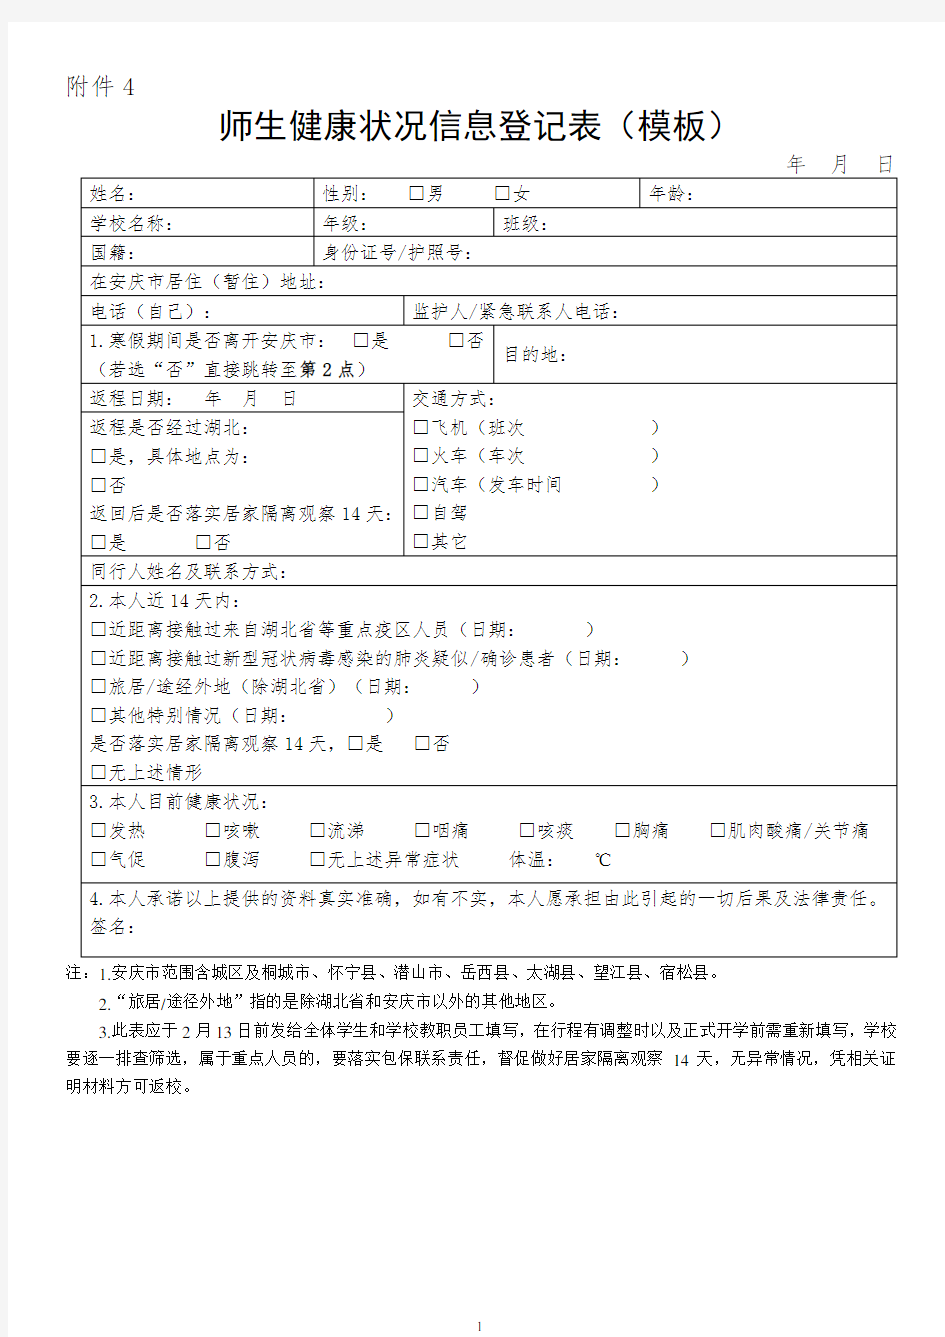 安徽师生健康状况信息登记表(模板)